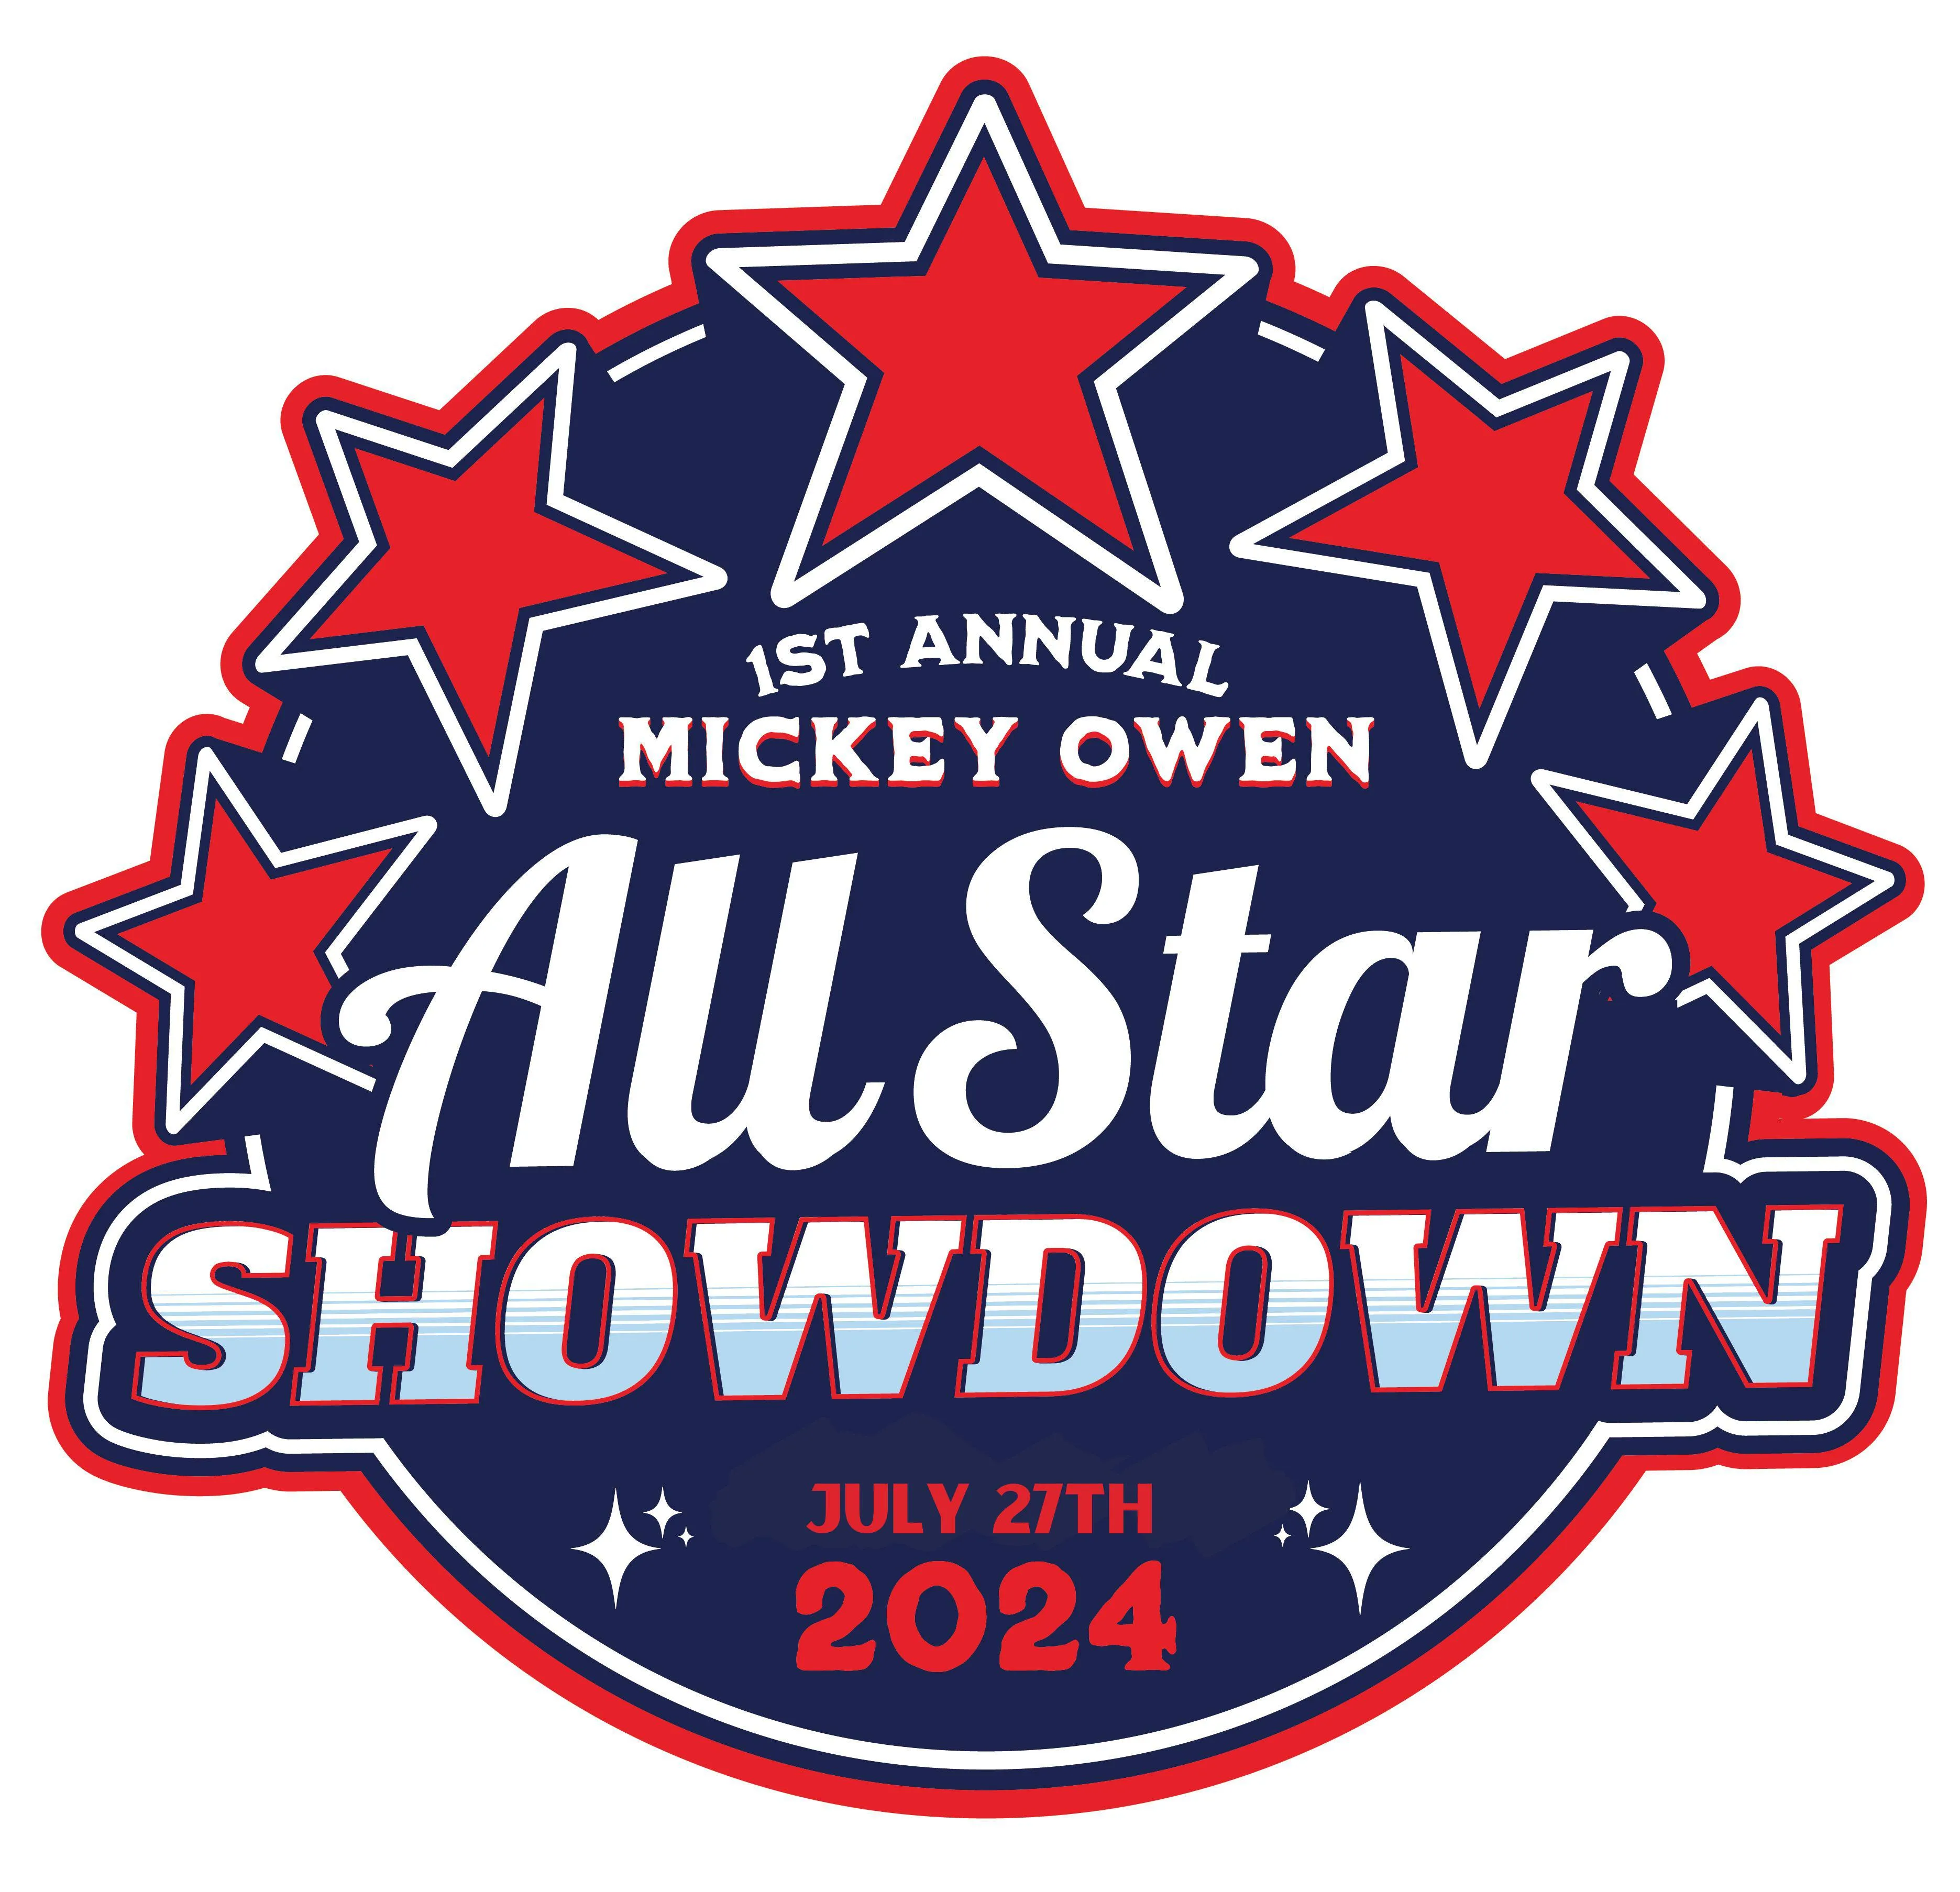 1st Annual Mickey Owen All Star Showdown